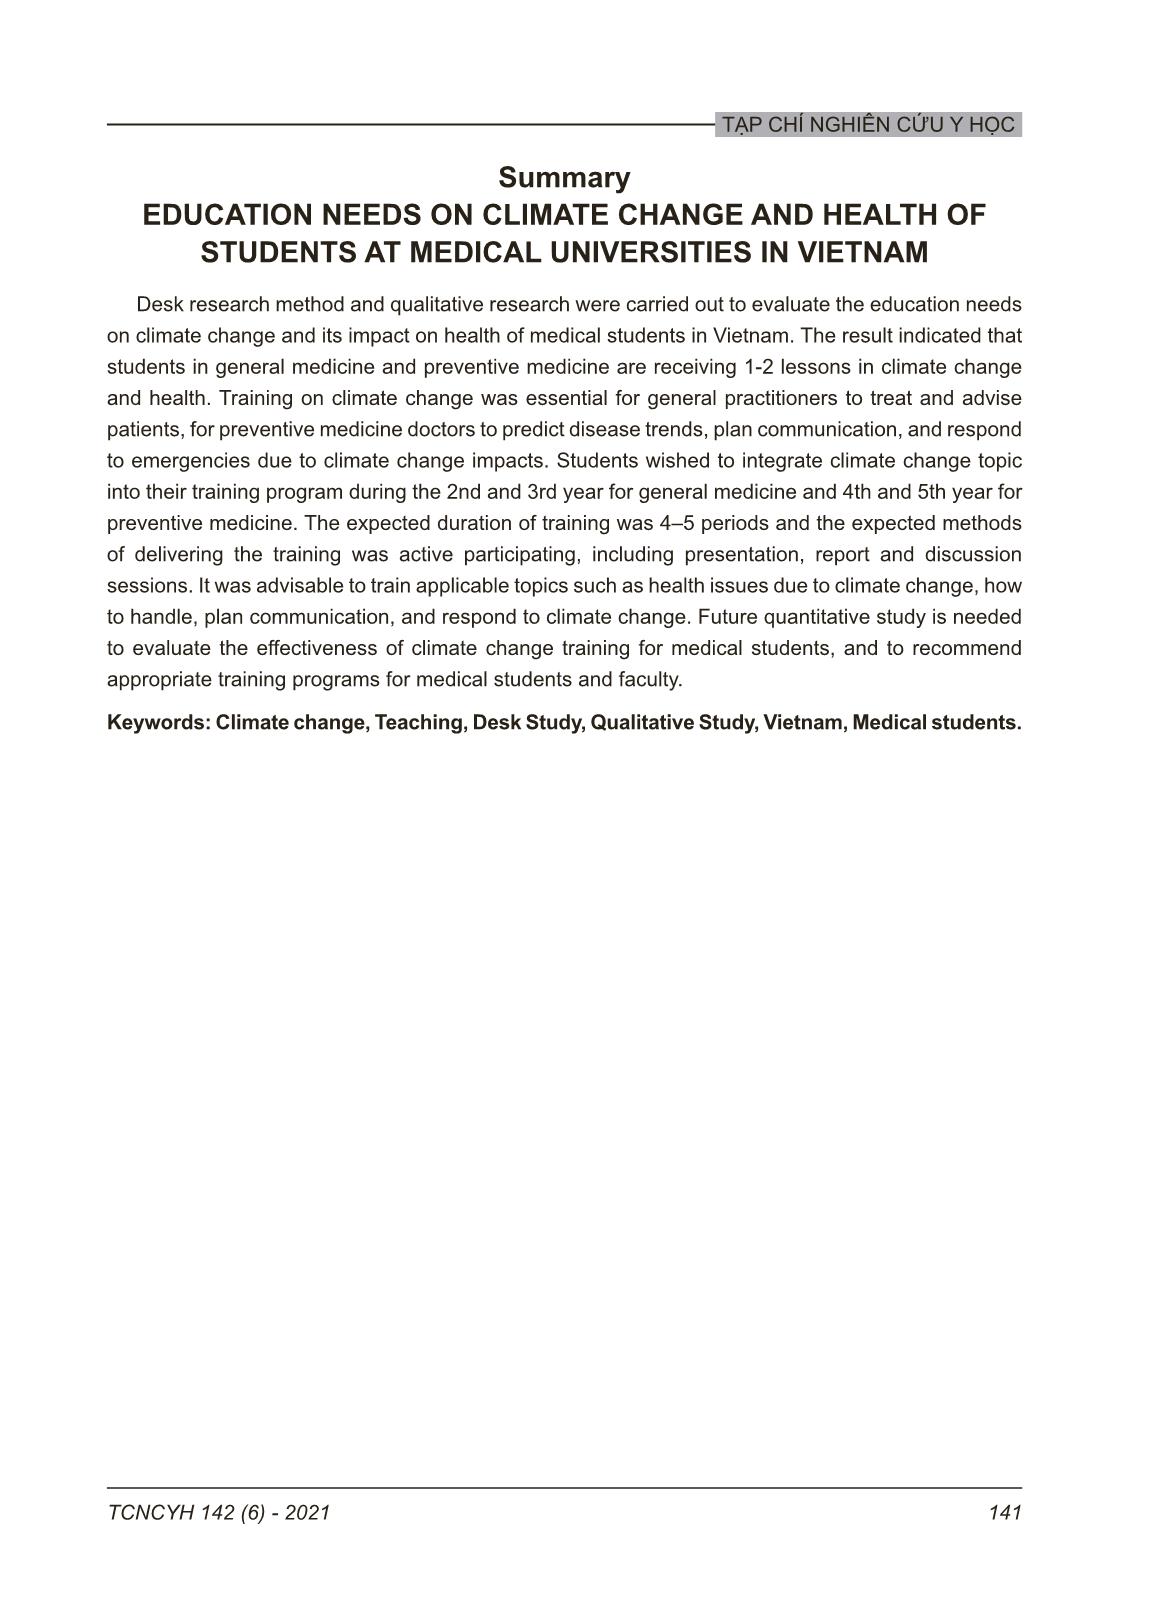 Nhu cầu đào tạo về biến đổi khí hậu và sức khỏe ở các trường đại học y khoa tại Việt Nam trang 9